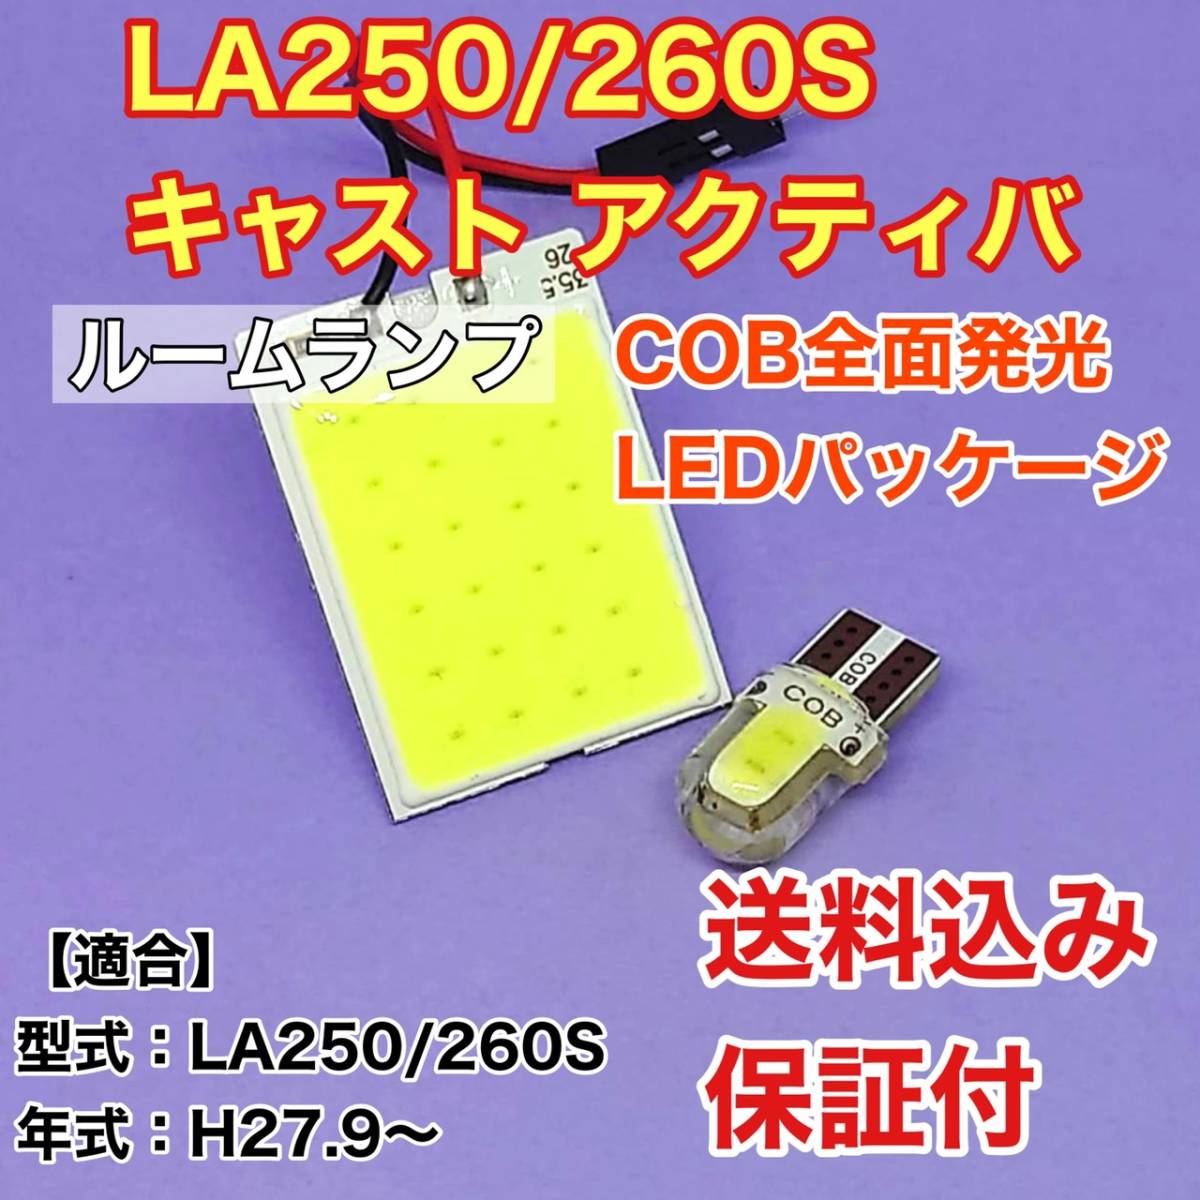 LA250/260S キャスト アクティバ LED ルームランプ COB全面発光 室内灯 車内灯 読書灯 ウェッジ球 ホワイト ダイハツ